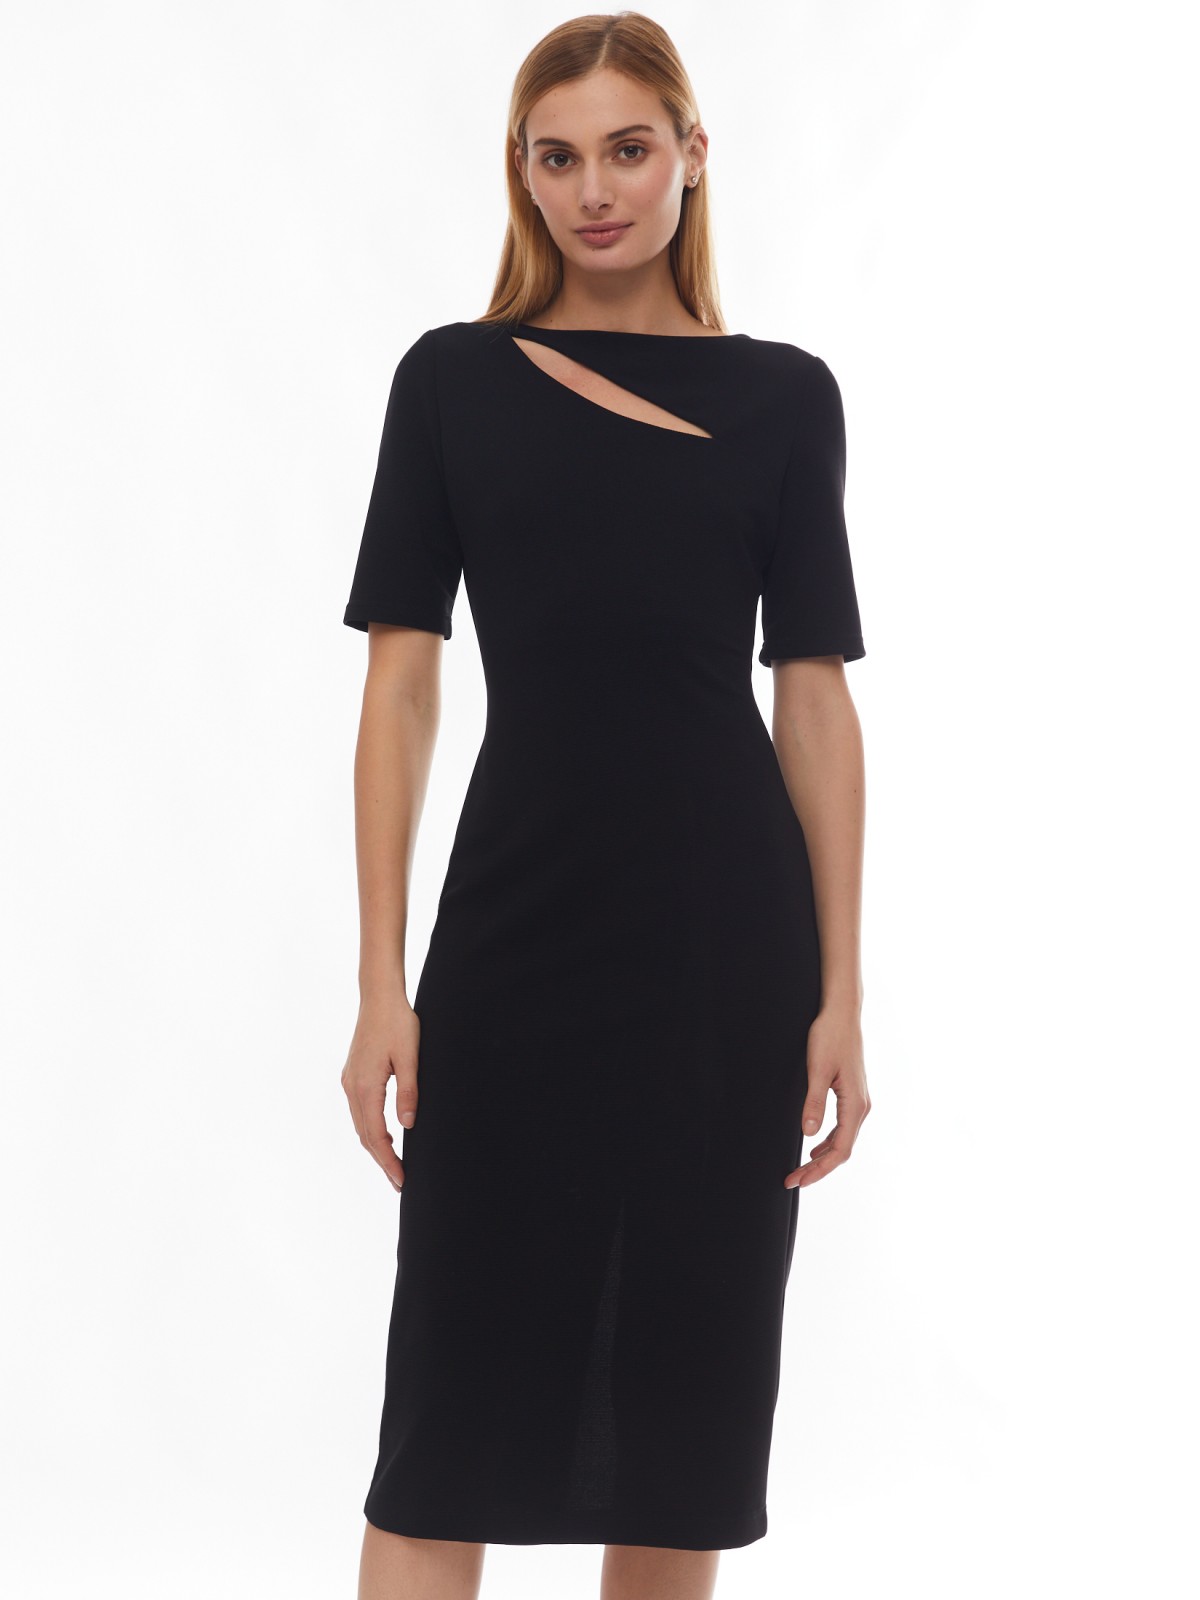 Платье длины миди с акцентным разрезом zolla 024138159031, цвет черный, размер XS